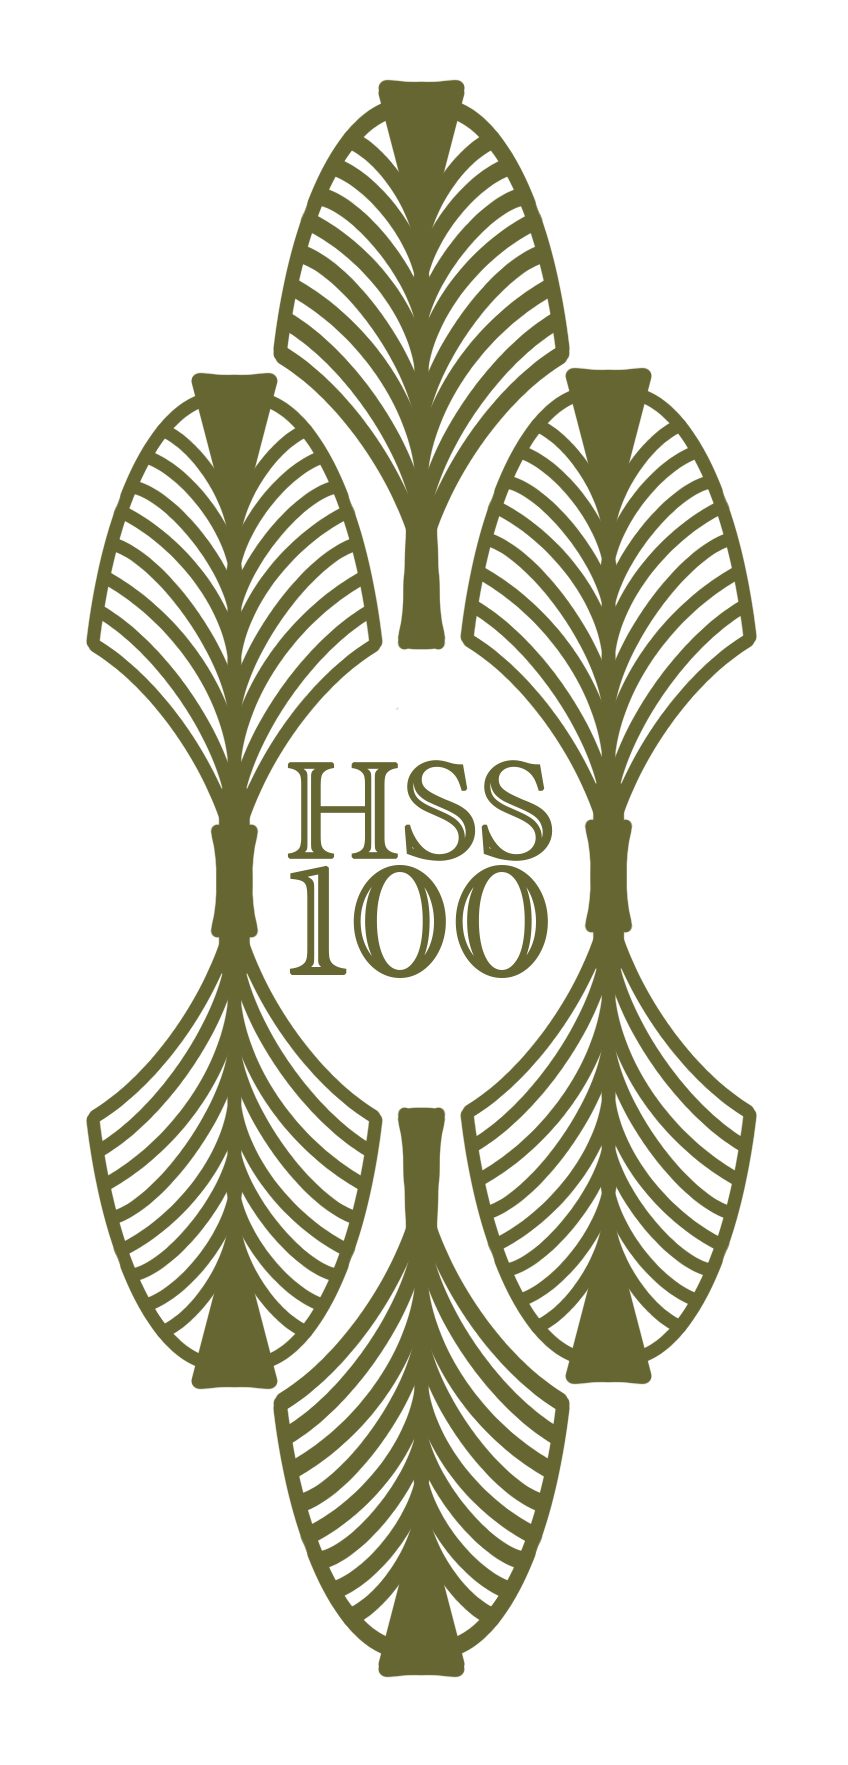 HSS 100